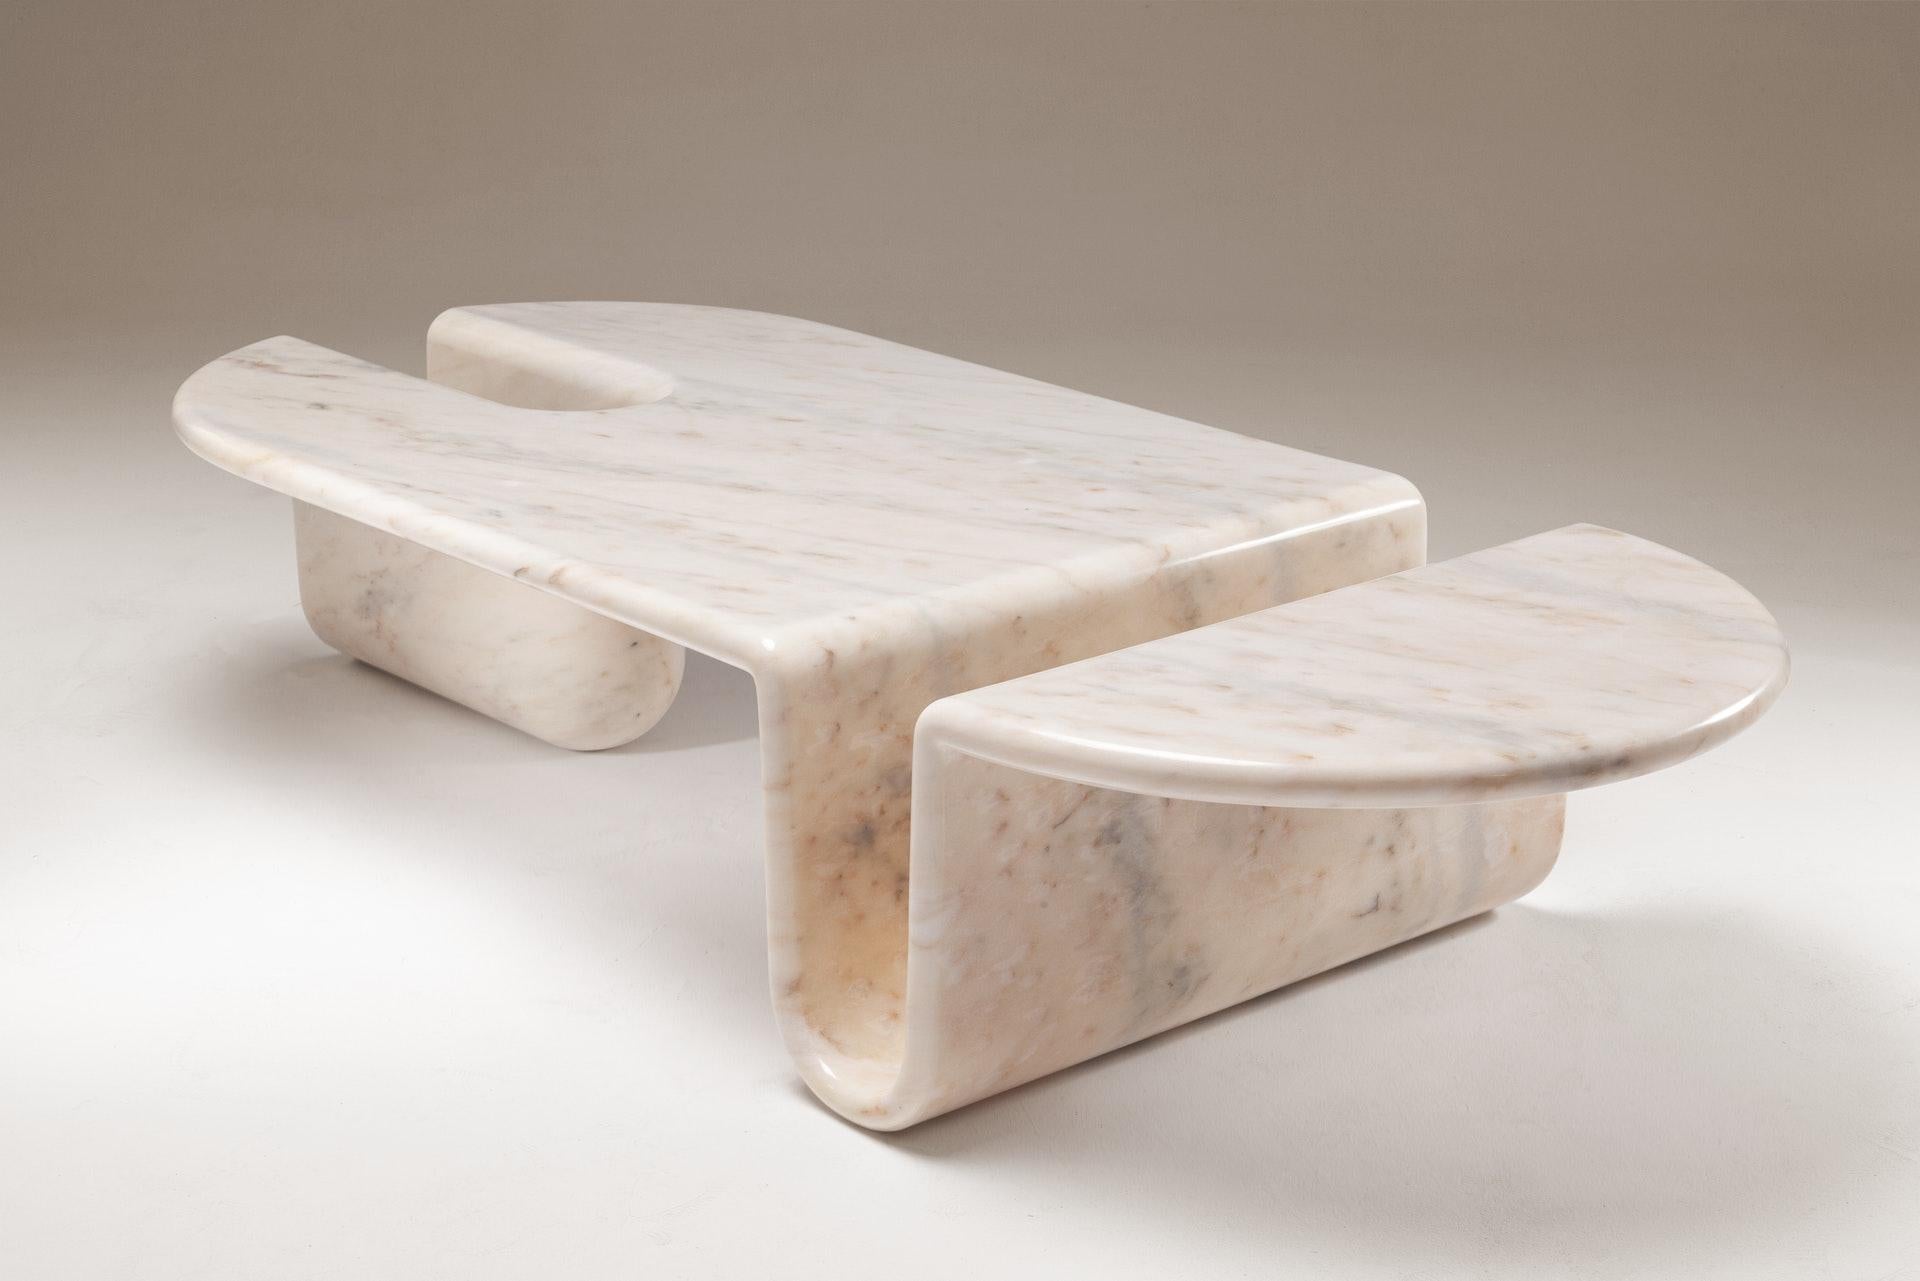 Couchtisch oder Beistelltisch aus einem massiven Block aus weißem Estremoz-Marmor, ein skulpturales Stück, das bis ins kleinste Detail handpoliert ist. Auf Bestellung gefertigt.

Sinnliche Kurven und gerade Linien verkörpern die perfekte Kombination